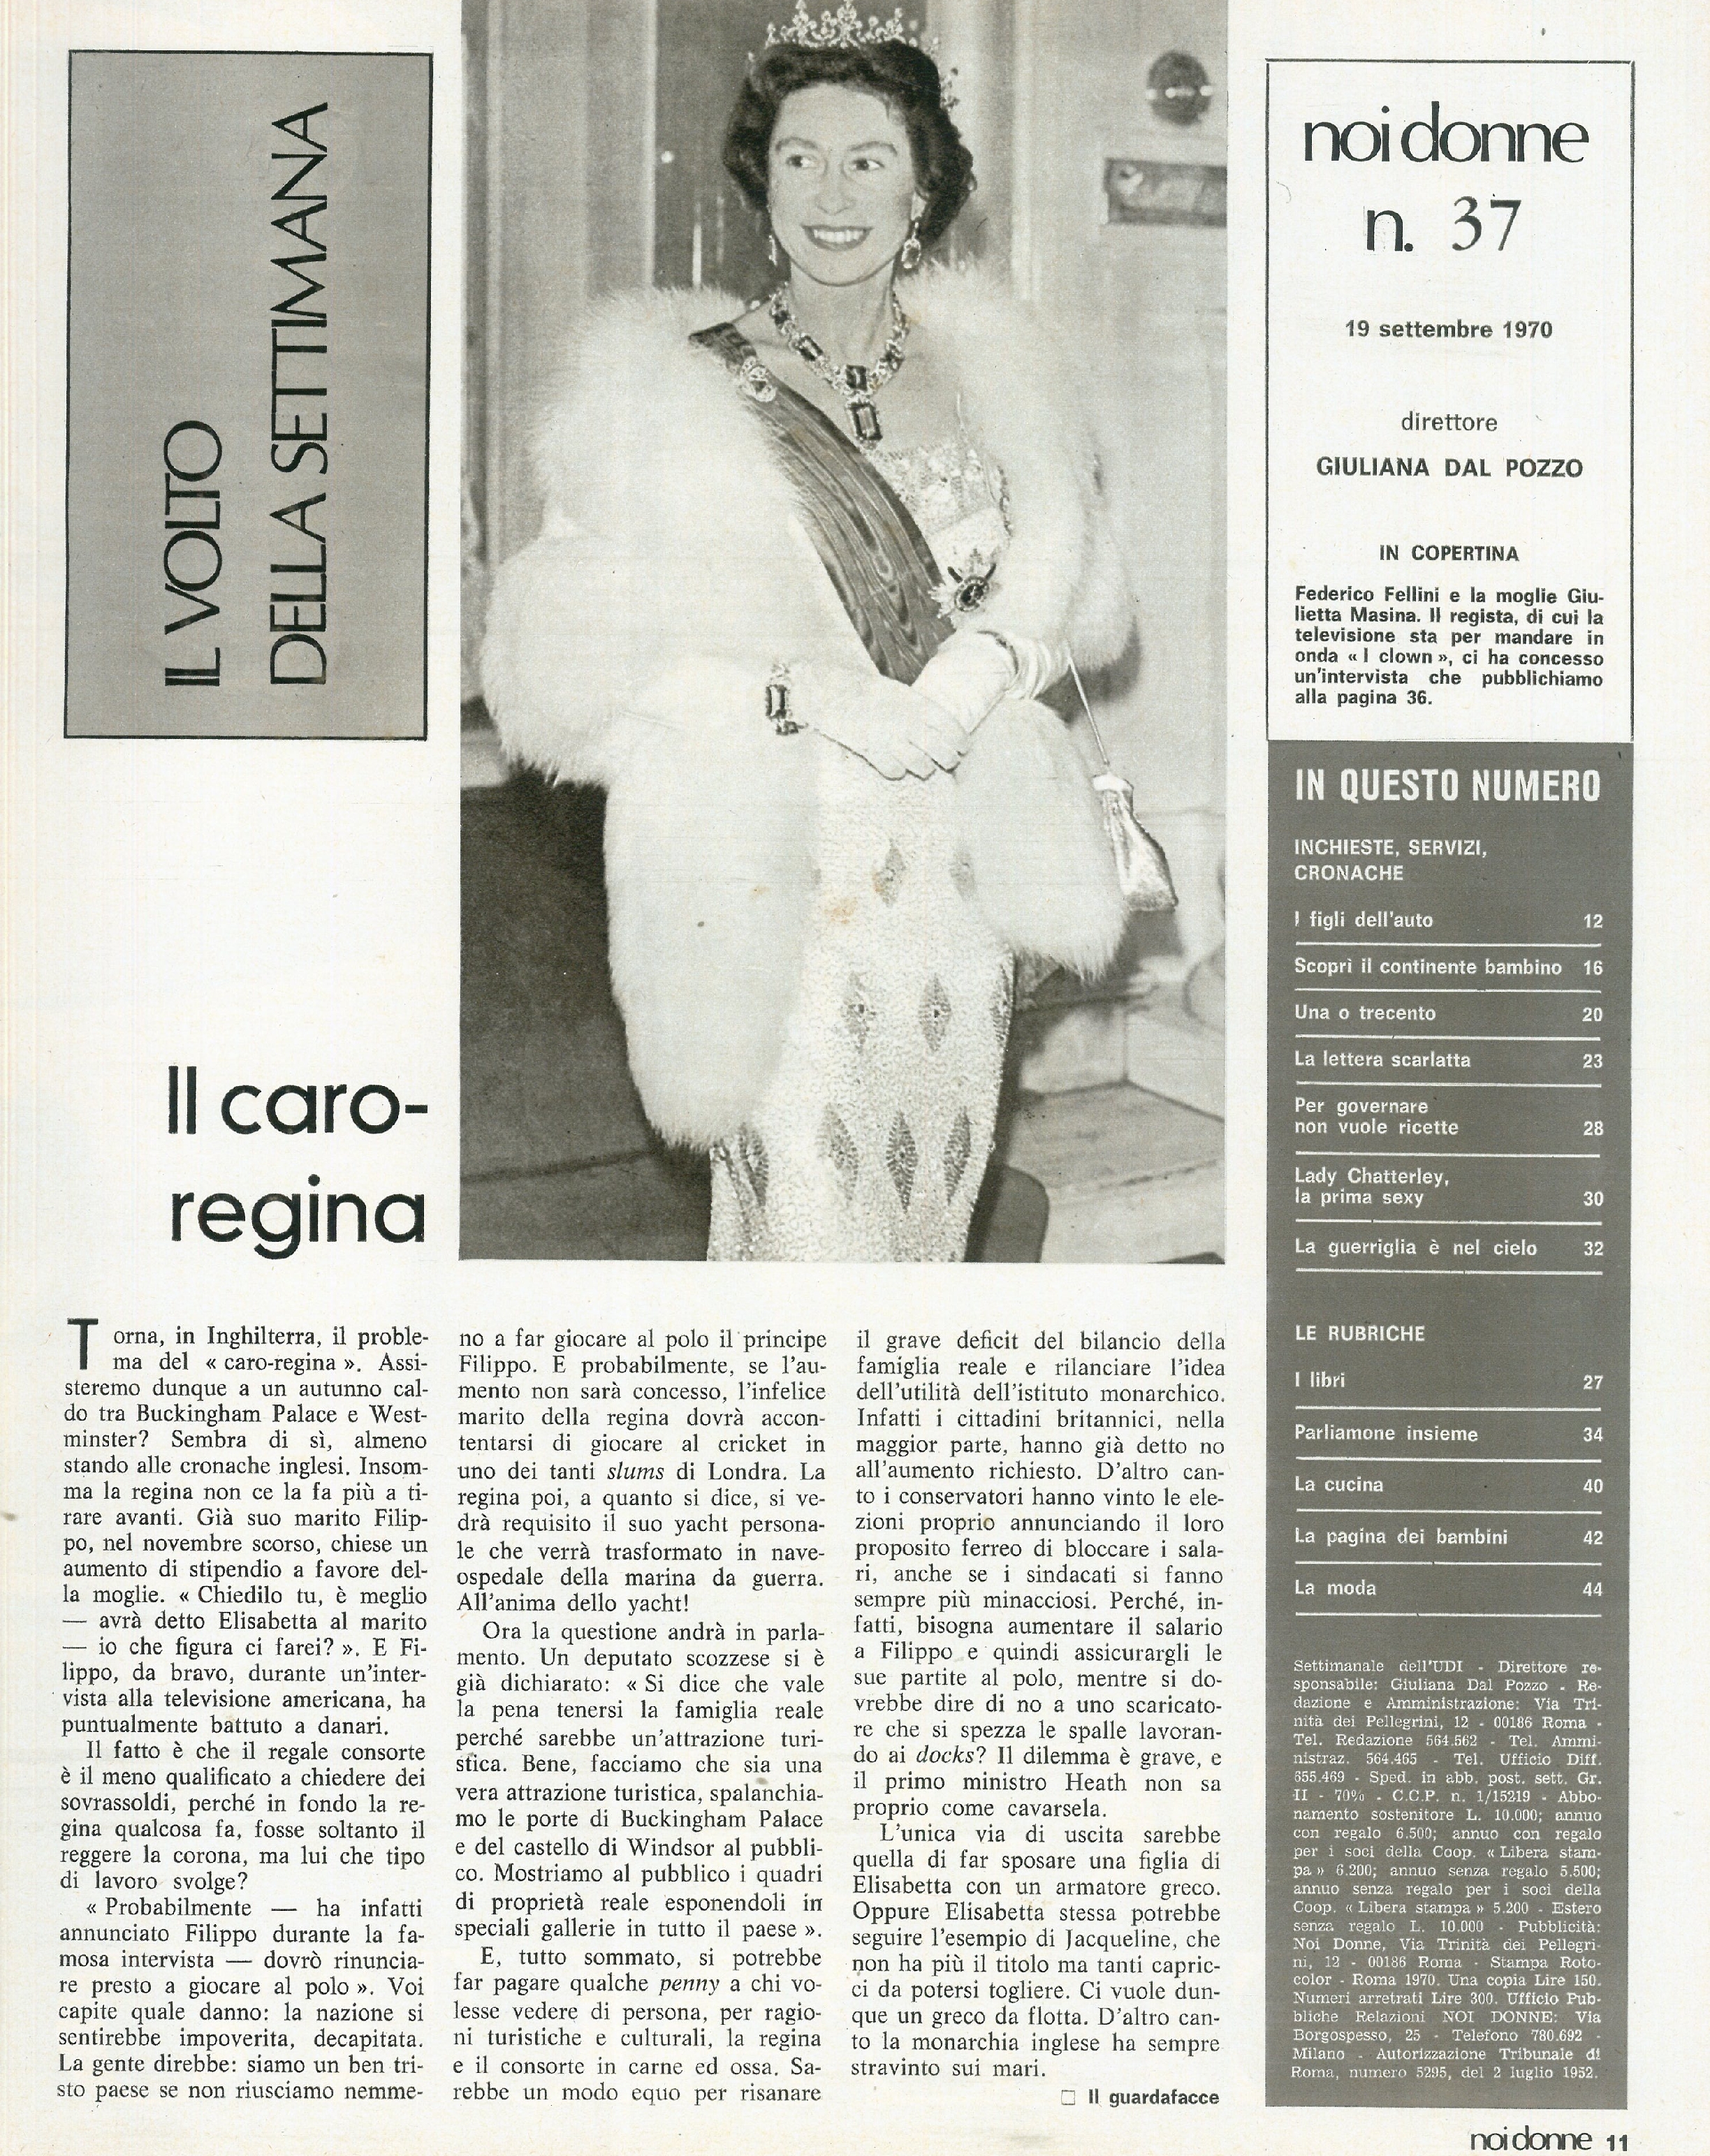 Foto: Il centenario di Maria Montessori; il Cile di Salvador Allende; Il musical “Hair” al Sistina; Farmaci e malattie immaginarie; intervista a Federico Fellini